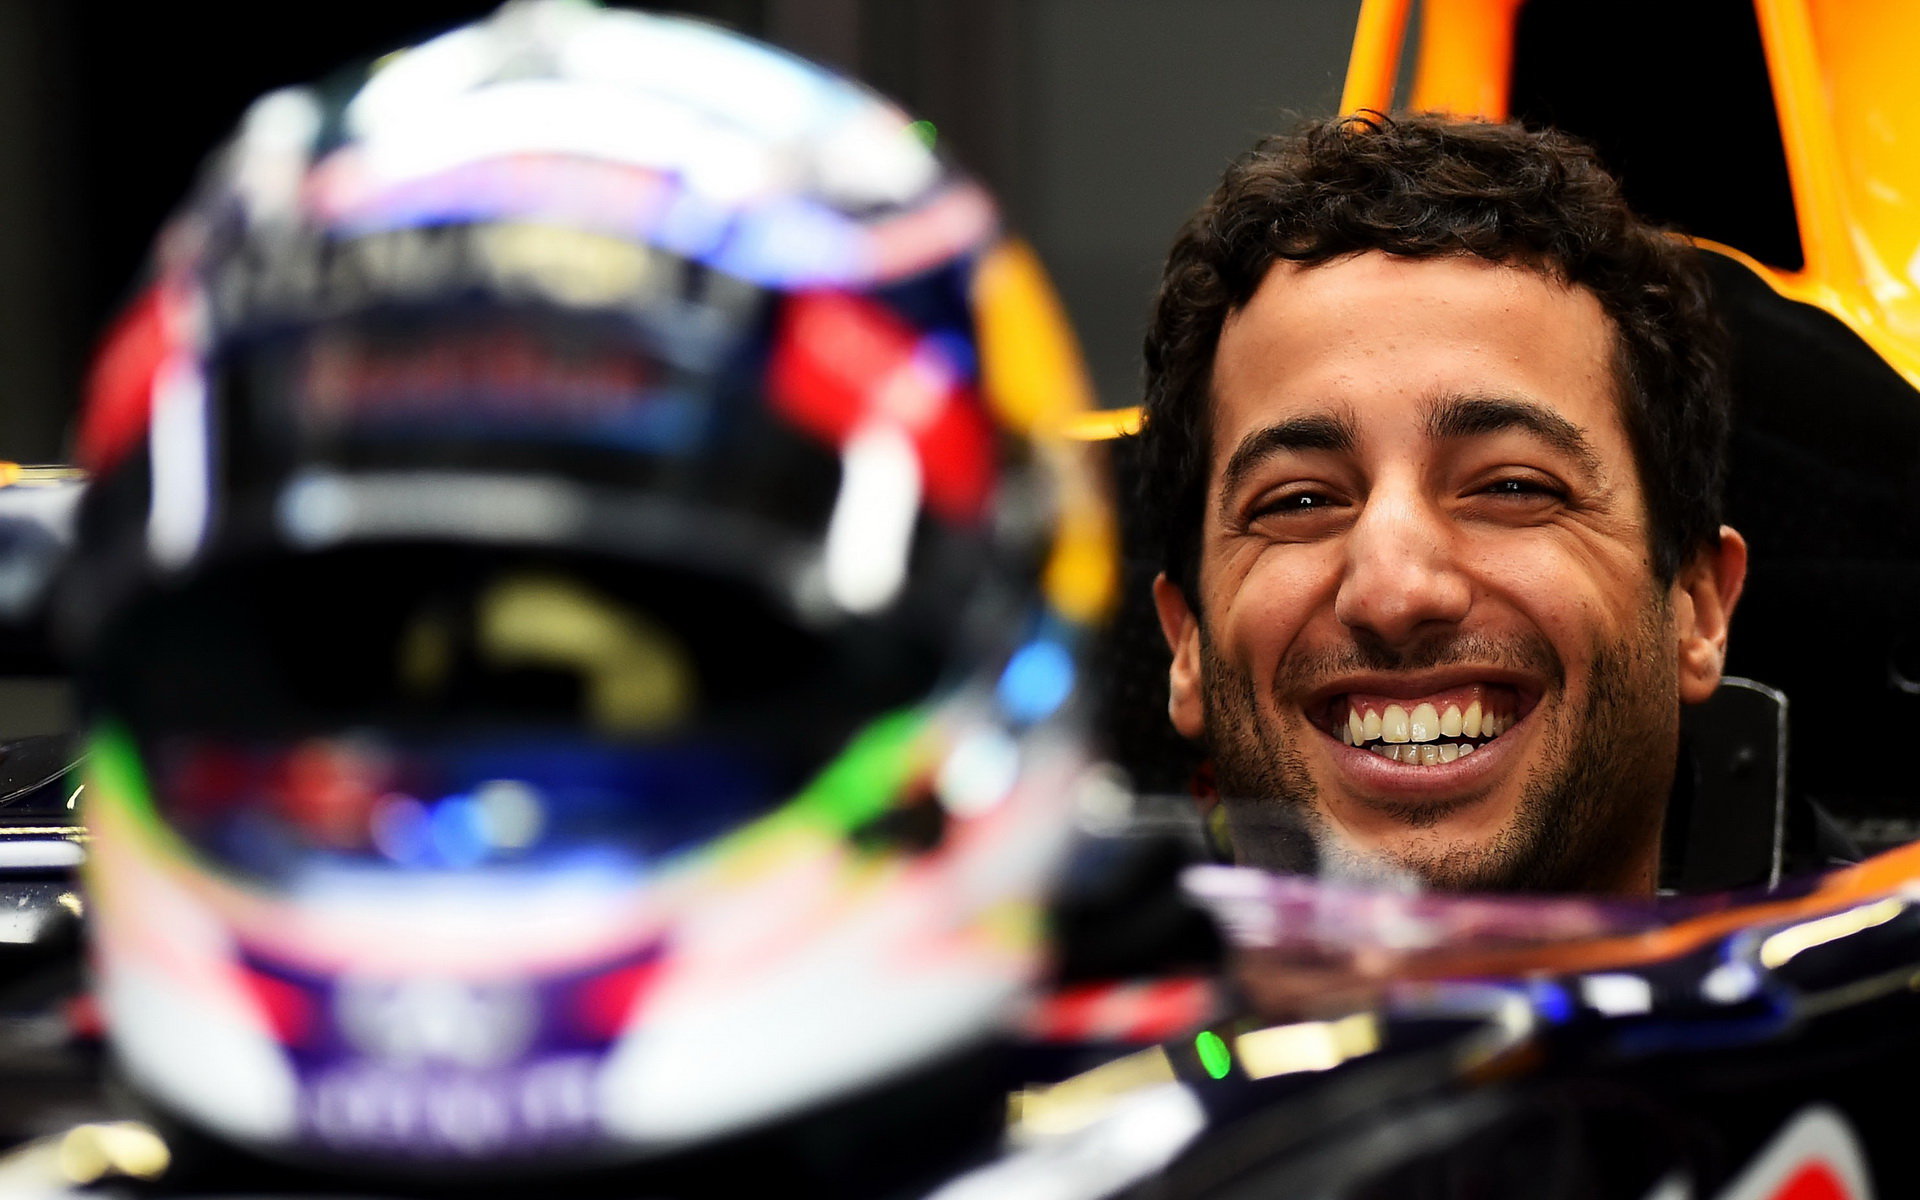 Zatím se Ricciardo usmívá, ale už začíná řešit i případné komplikace